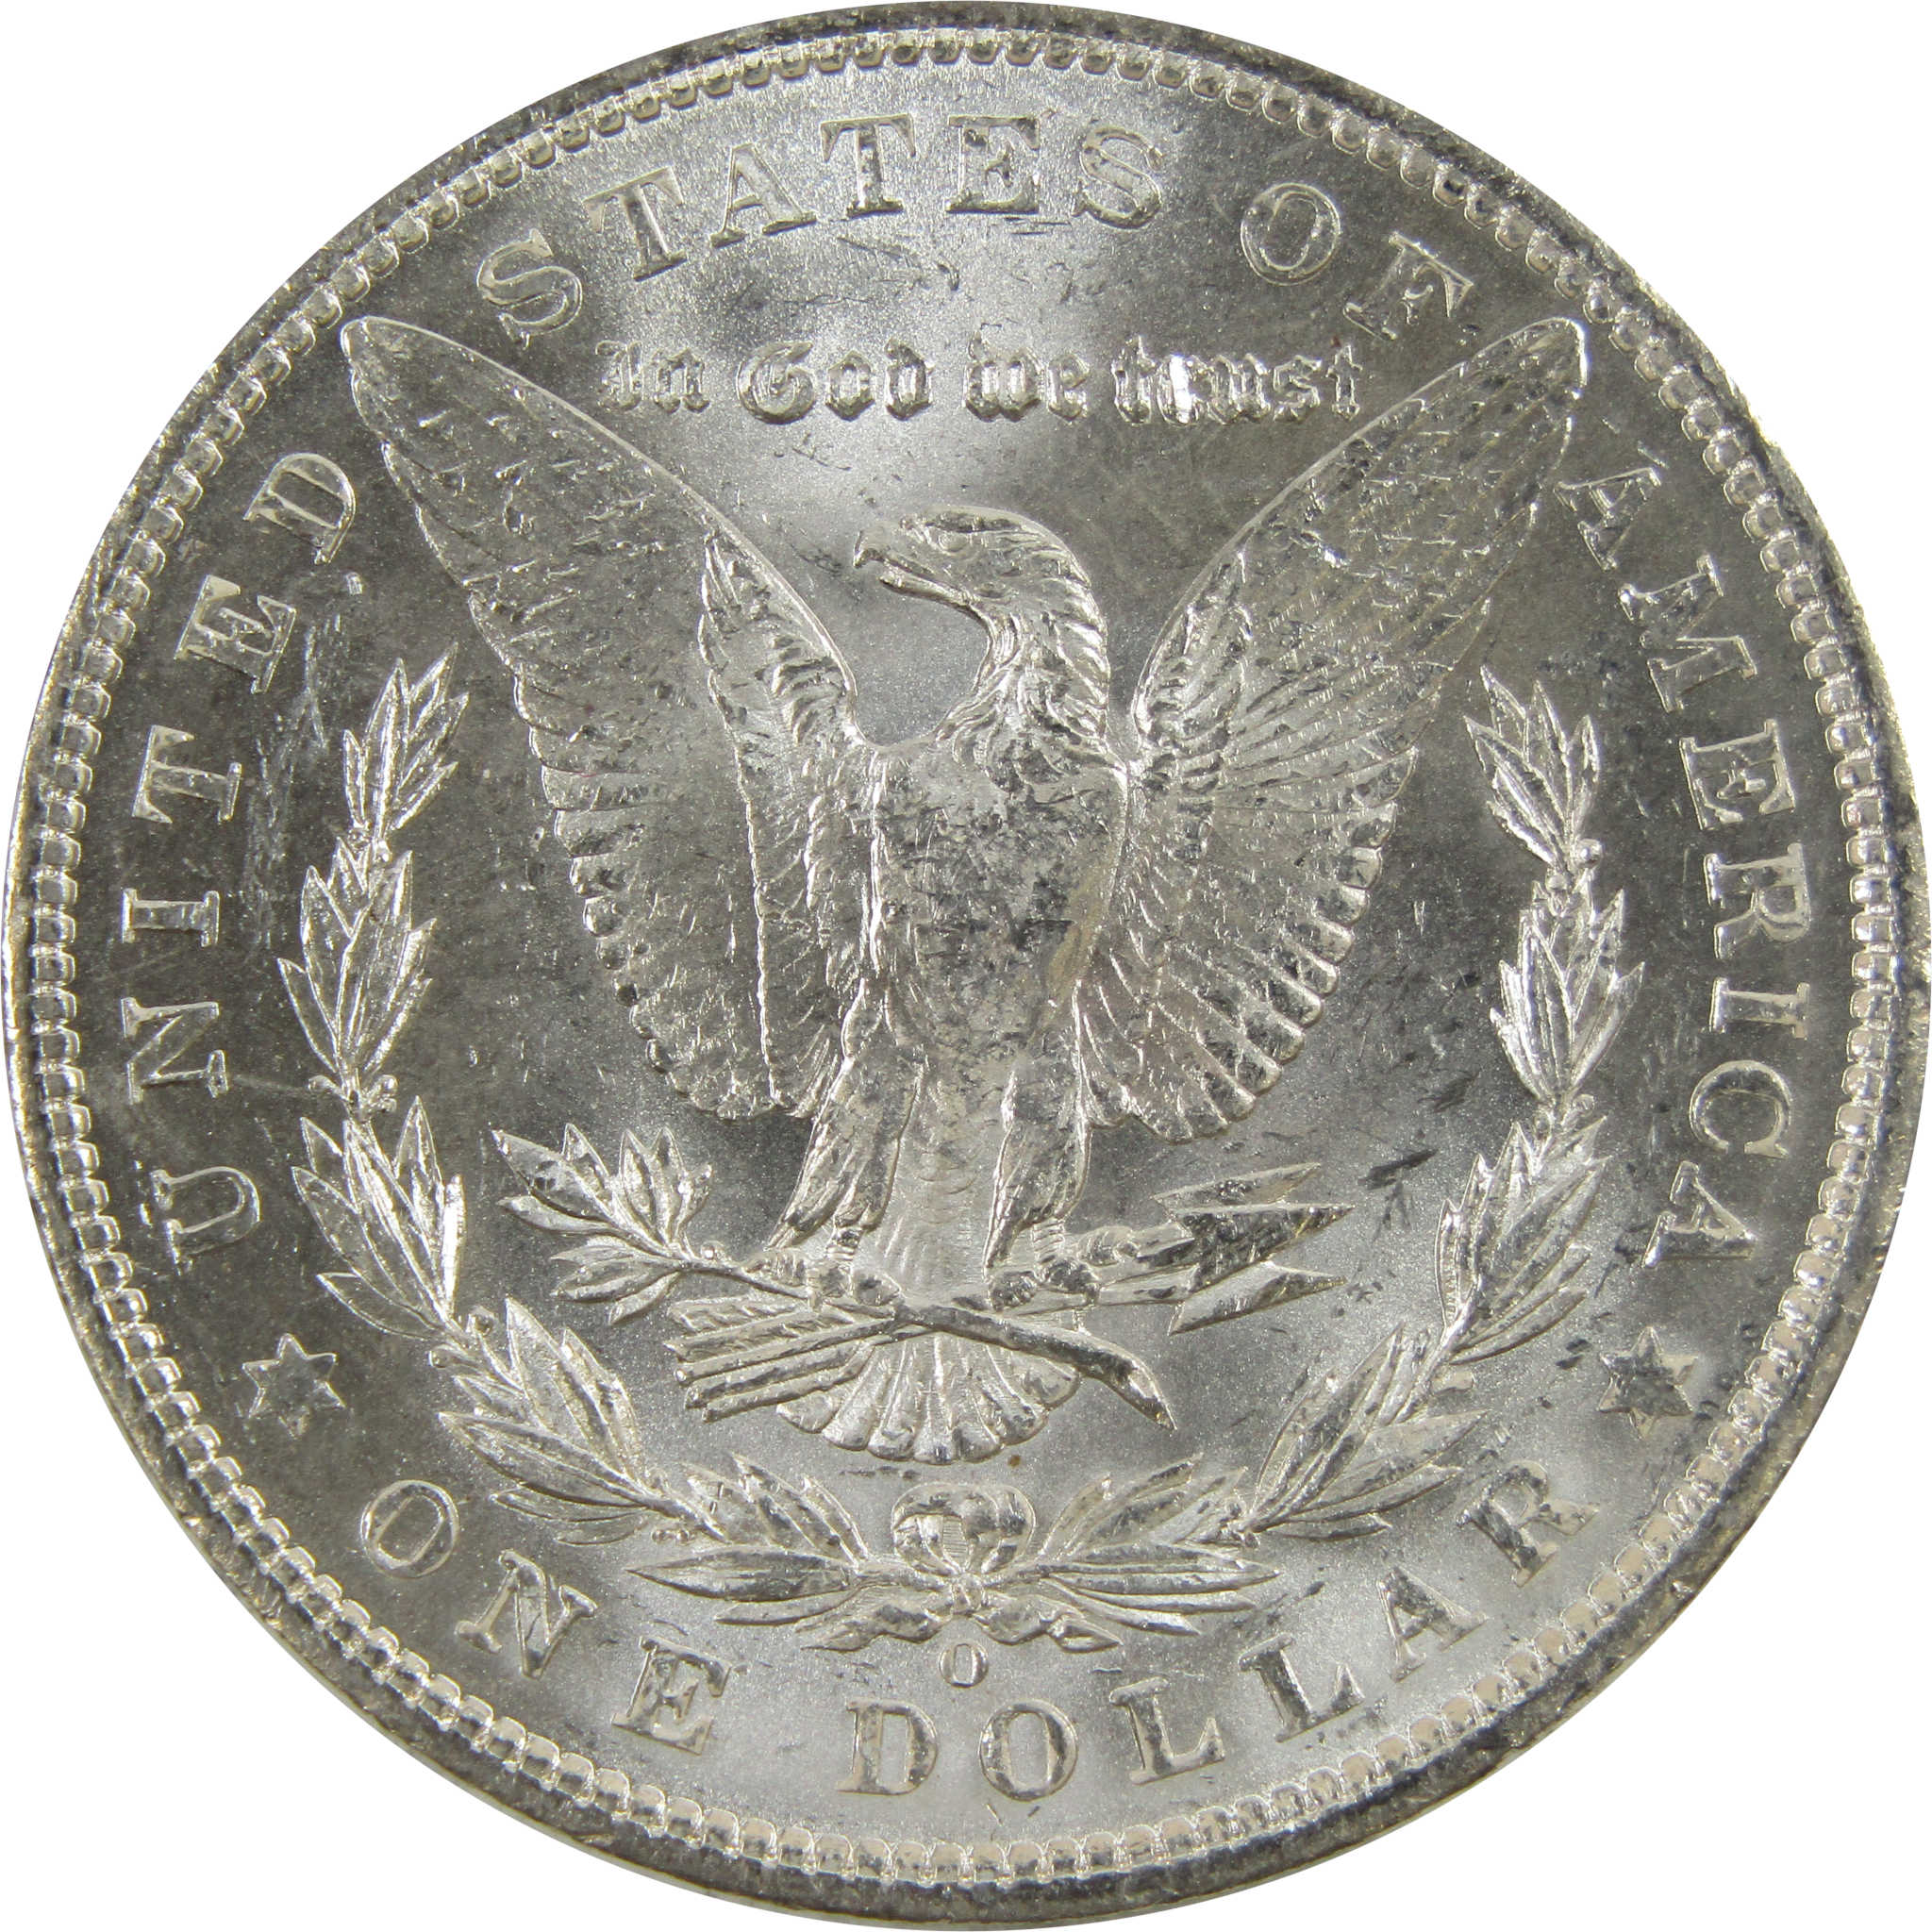 1904 O Morgan Dollar BU Uncirculated 90% Silver $1 Coin SKU:I5220 - Morgan coin - Morgan silver dollar - Morgan silver dollar for sale - Profile Coins &amp; Collectibles